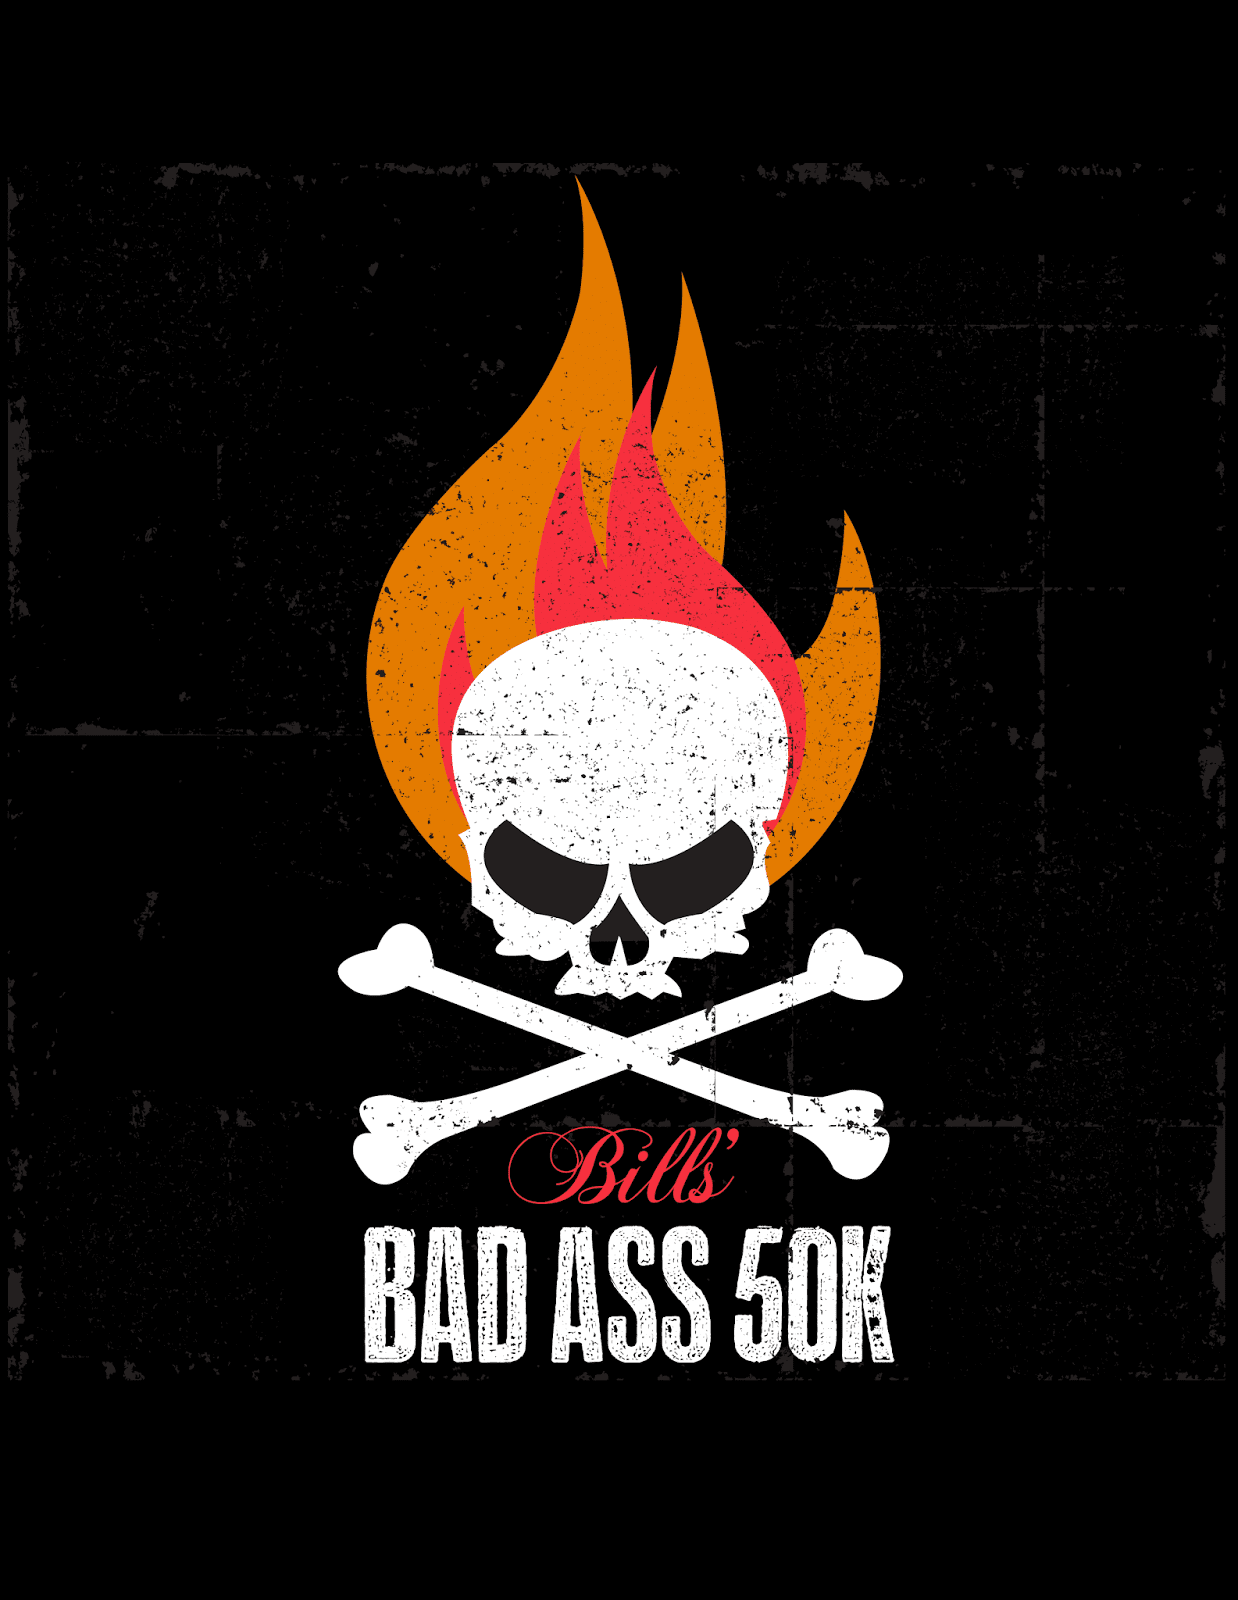 Bill’s Badass 50K logo on RaceRaves